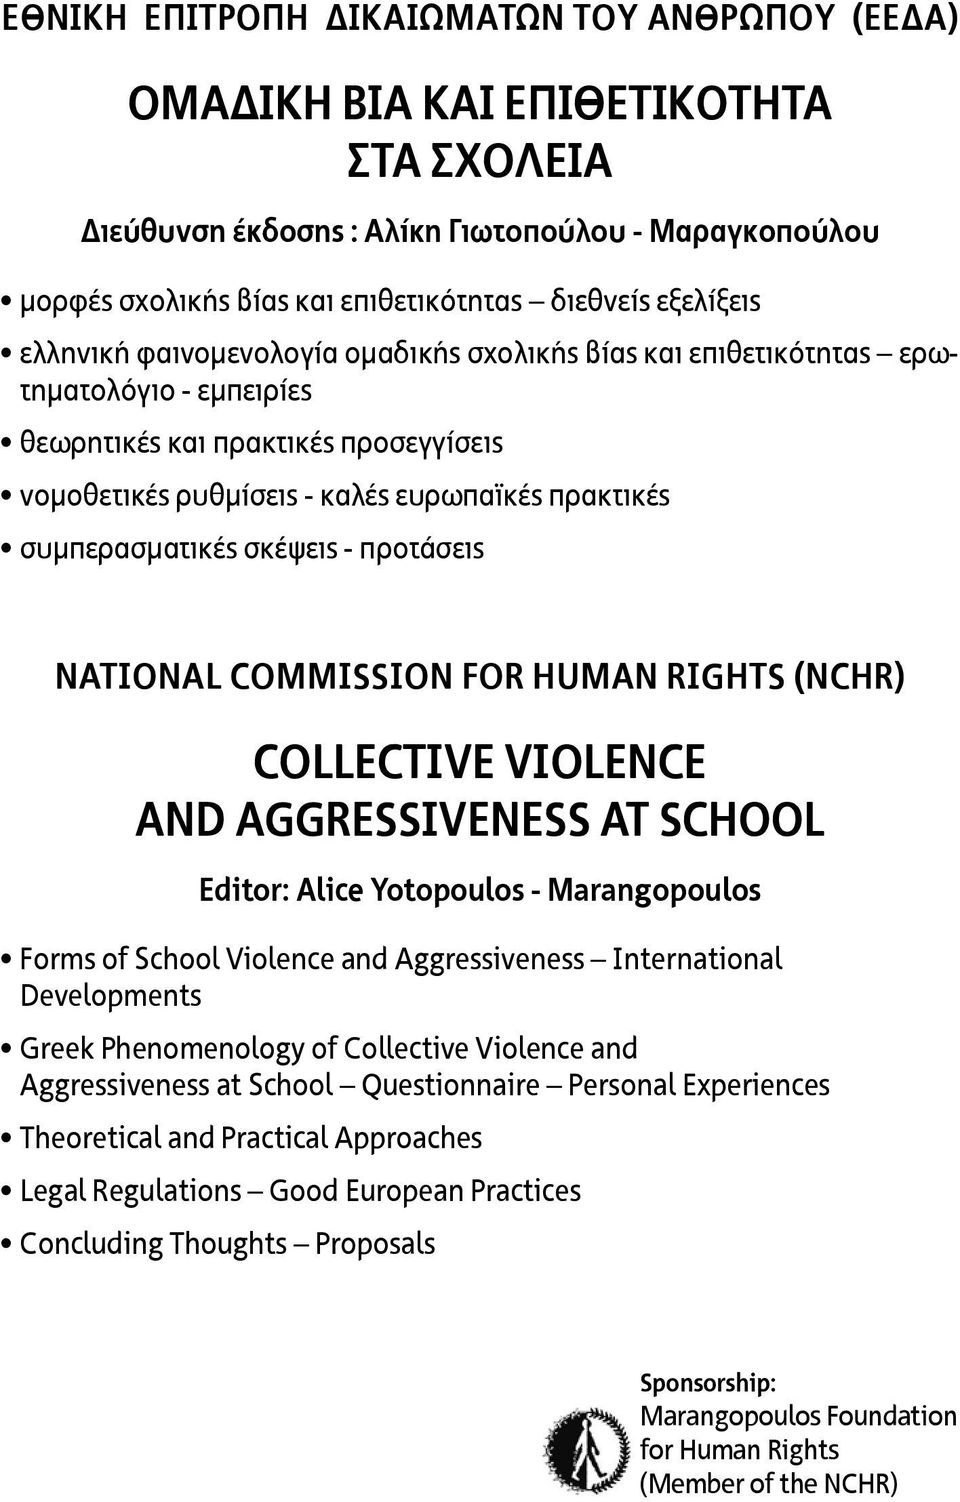 συμπερασματικές σκέψεις - προτάσεις NATIONAL COMMISSION FOR HUMAN RIGHTS (NCHR) COLLECTIVE VIOLENCE AND AGGRESSIVENESS AT SCHOOL Editor: Alice Yotopoulos - Marangopoulos Forms of School Violence and